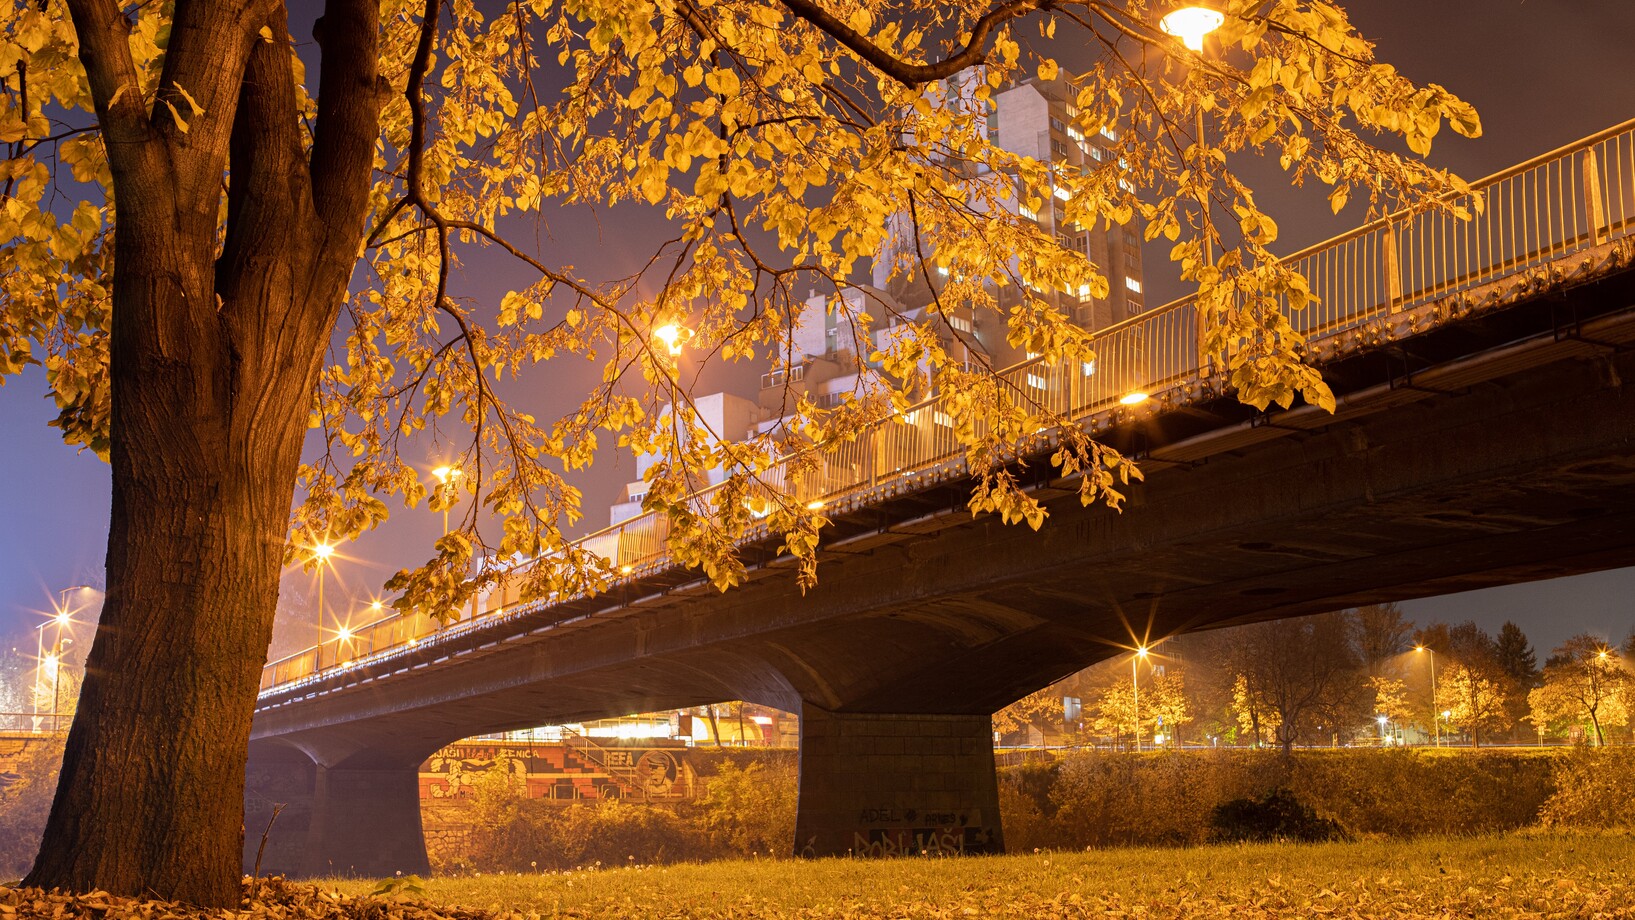 Autumn tree near bridge in town at night